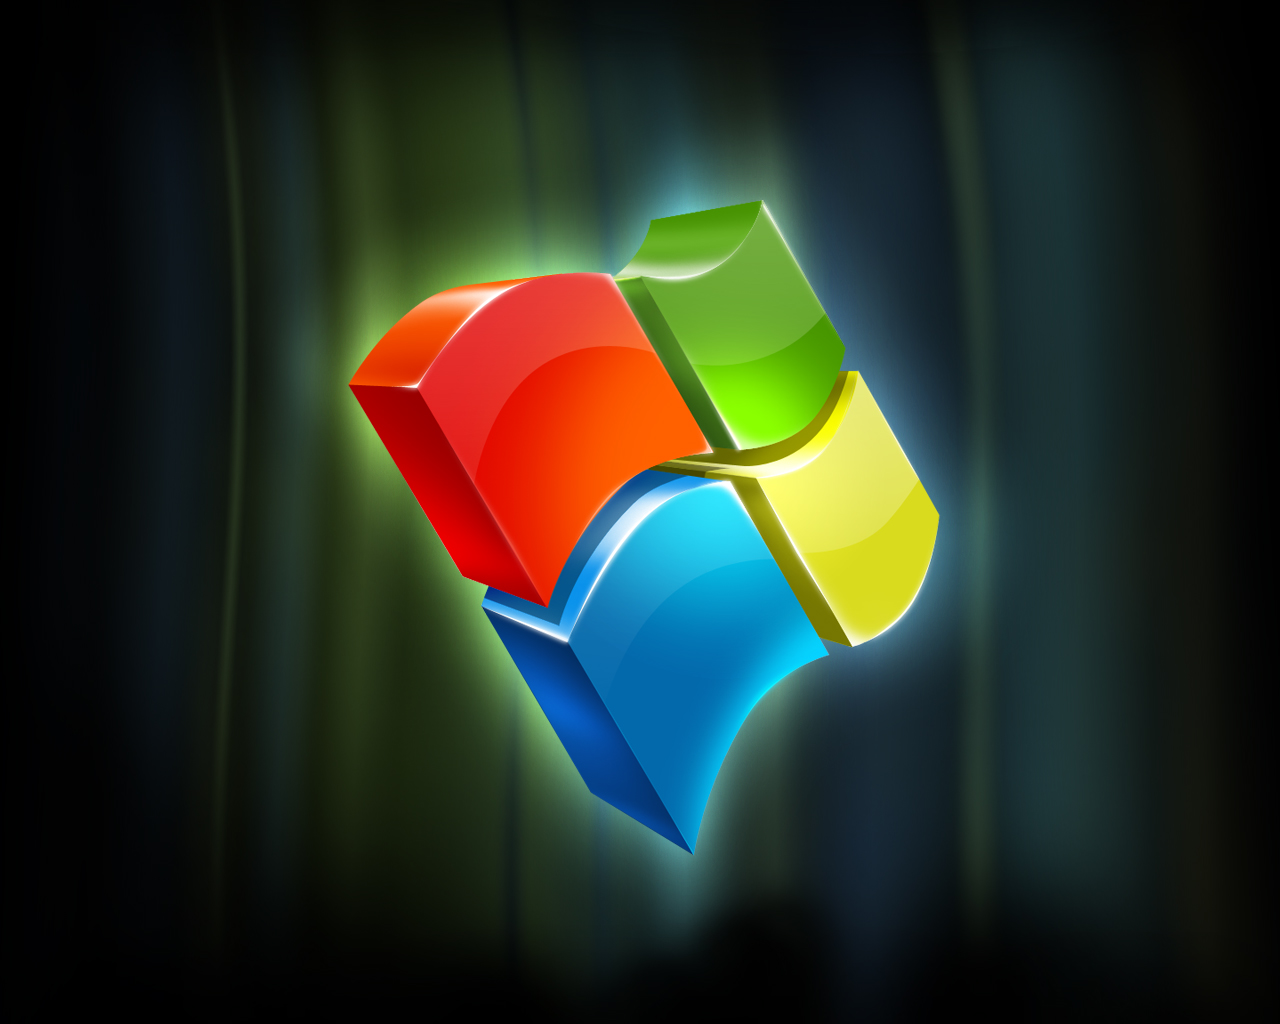 Windows 10 Logo 3d - 1280x1024 Wallpaper 